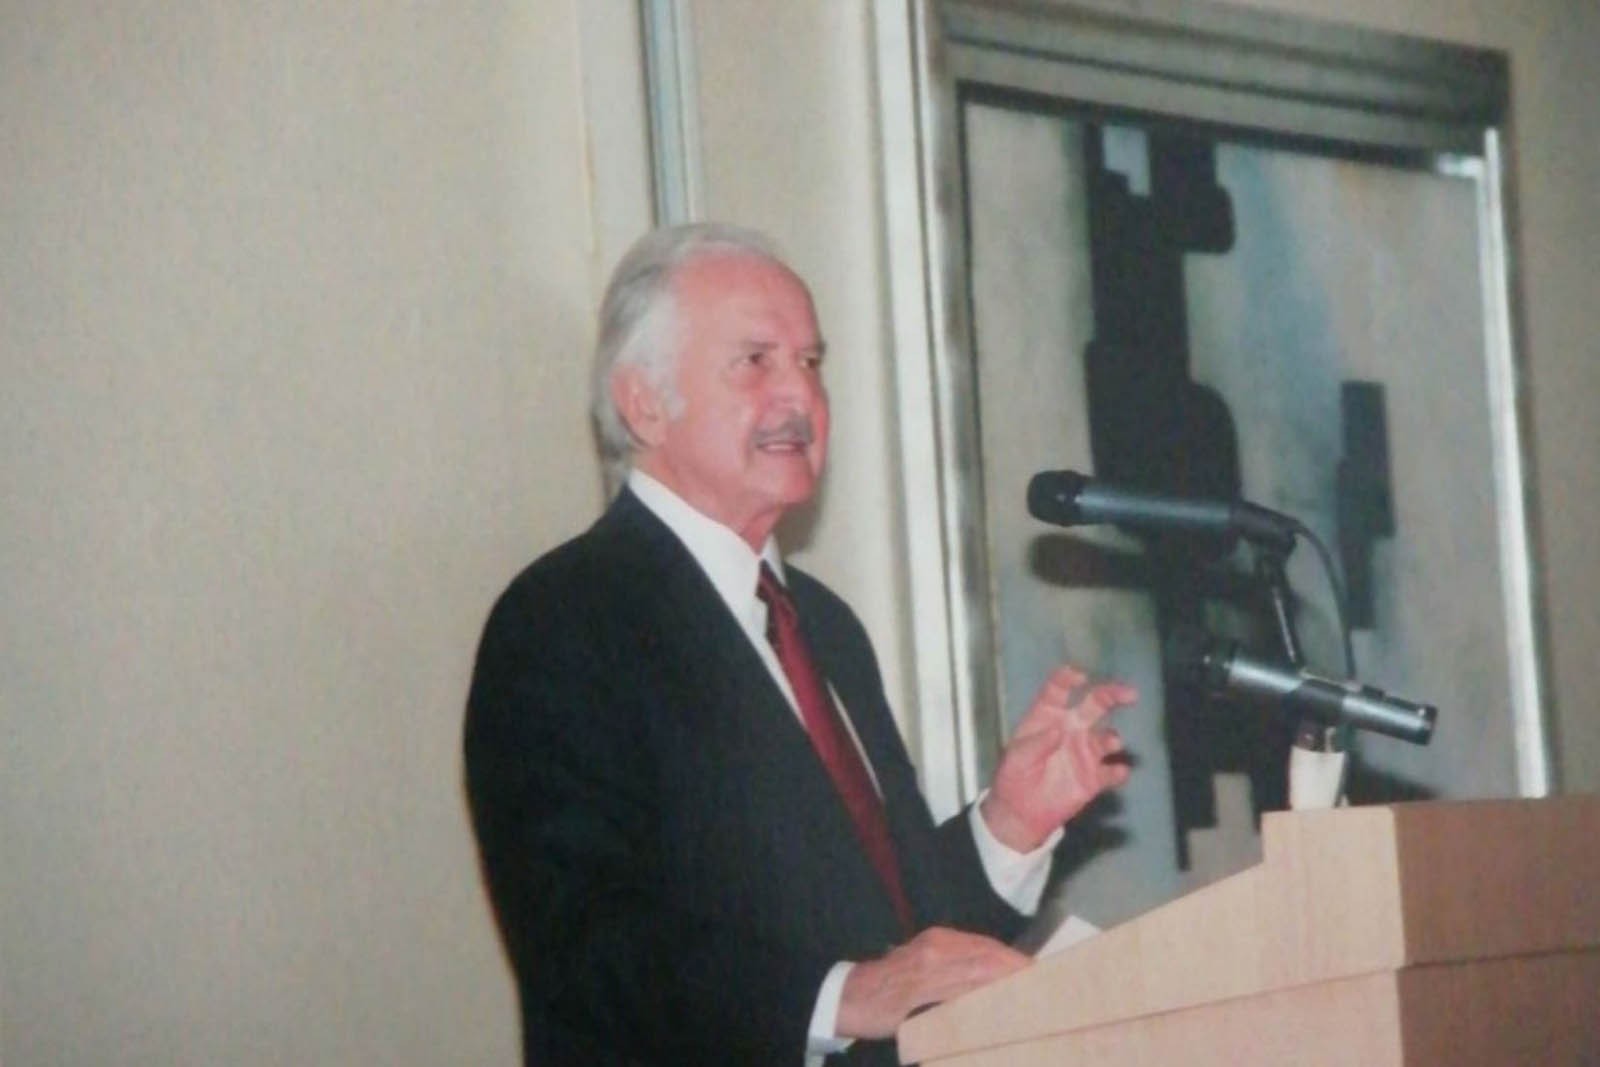 Carlos Fuentes dirigió unas palabras en la cena de gala Una noche parisina en el Hotel Plaza Athénée a beneficio de AmigosMAP. (Foto: AmigosMAP).